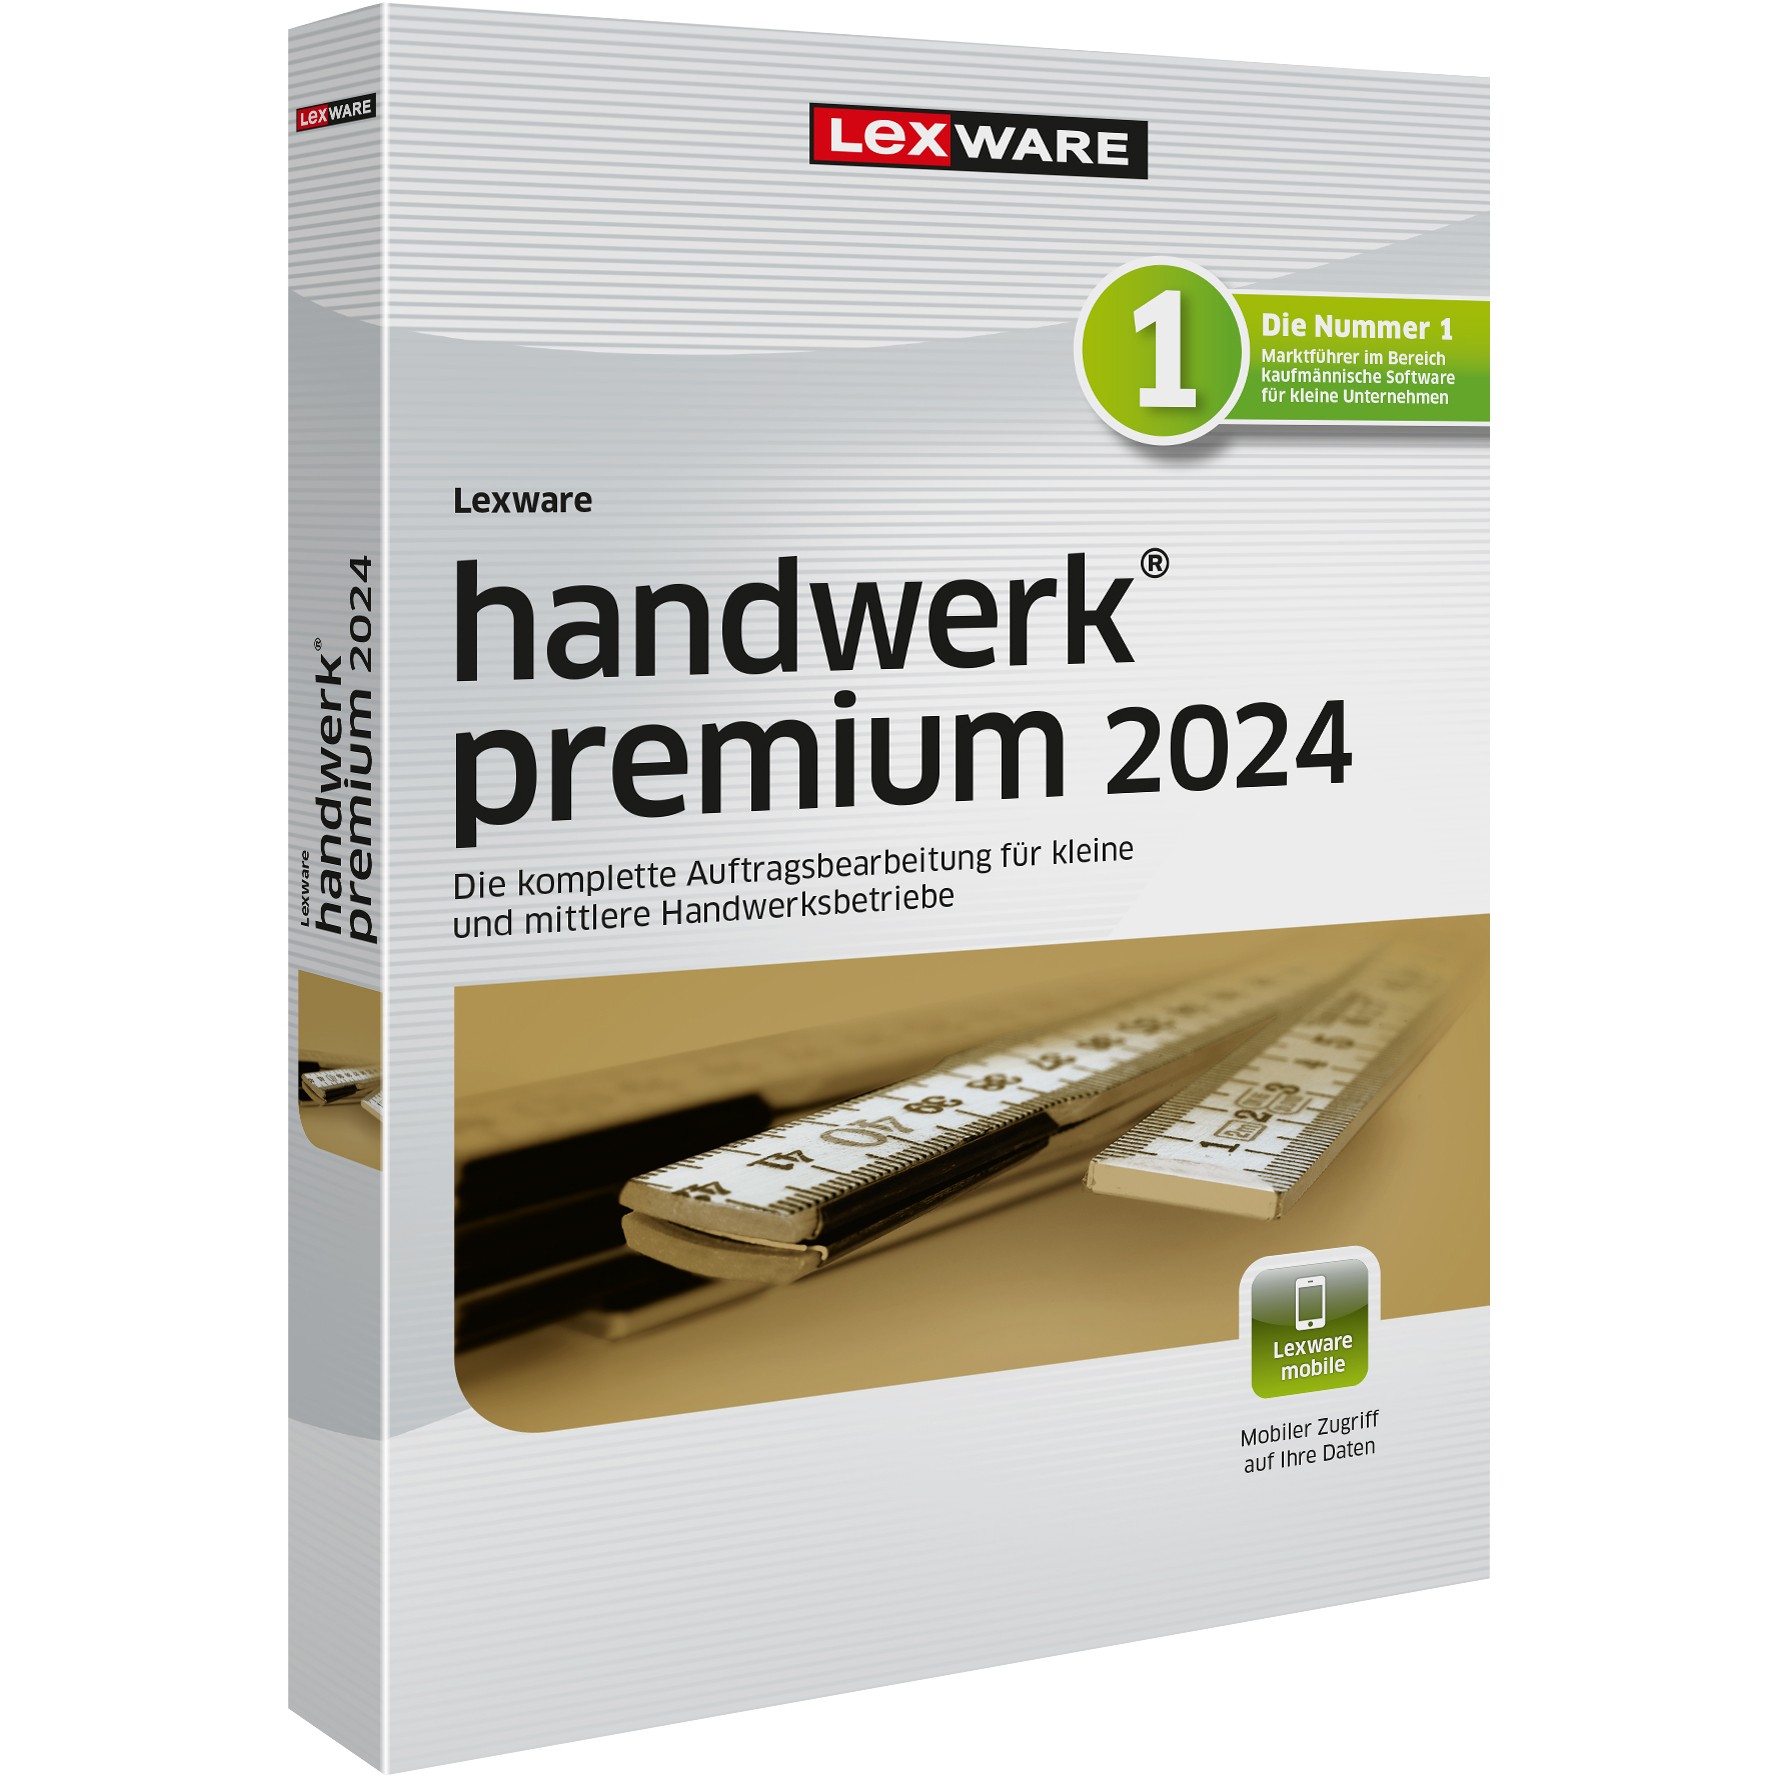 Lexware Handwerk Premium 2024 - 1 Device, 1 Year - ESD-DownloadESD